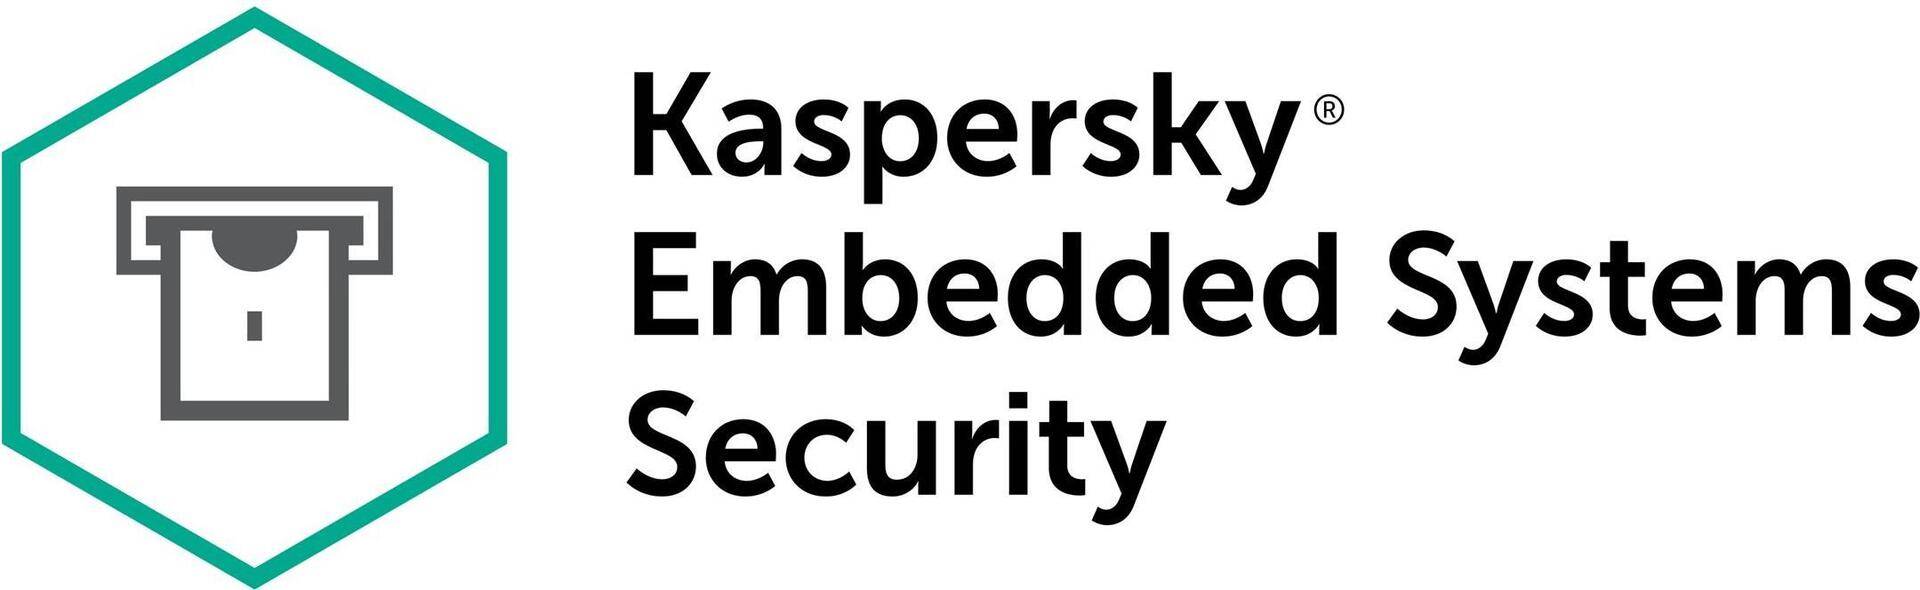 Kaspersky Embedded Systems Security - Abonnement-Lizenz (3 Jahre) - Volumen - Stufe R (100-149) - Win - Europa von Kaspersky Lab